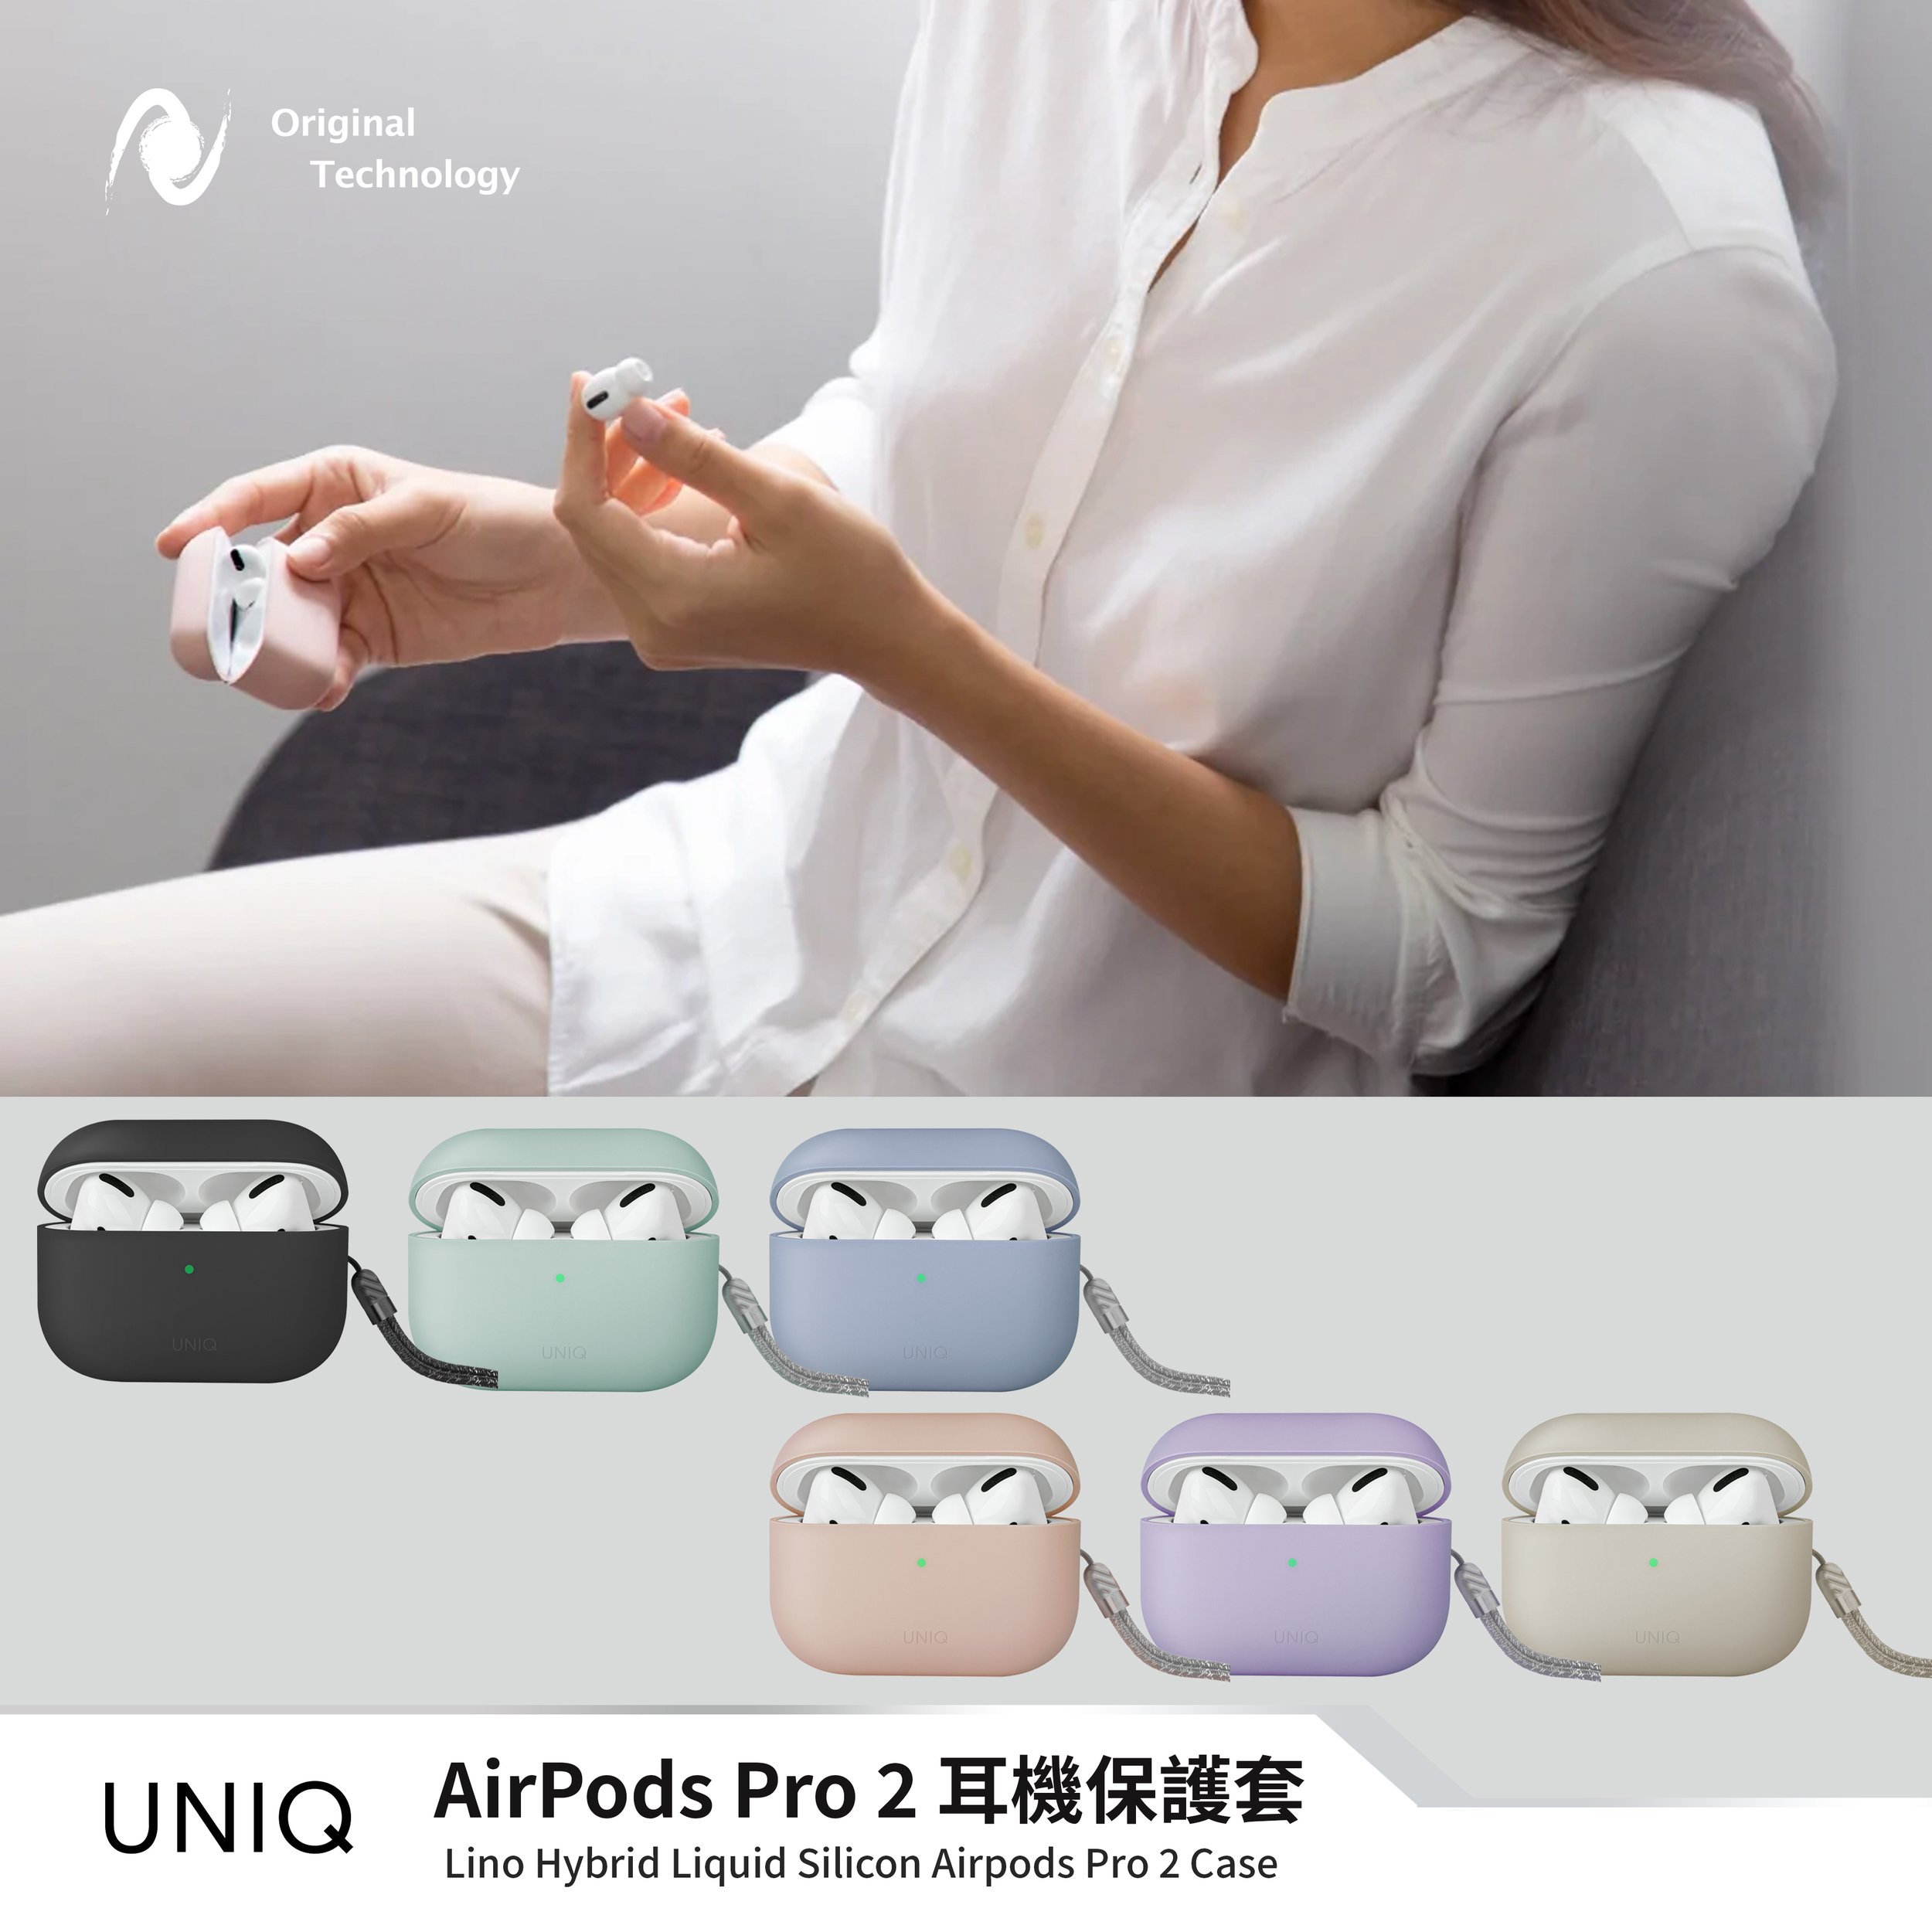 Uniq LINO AirPods Pro 2 耳機套 – 六色可選🌟 經典不過時的簡潔風耳機套